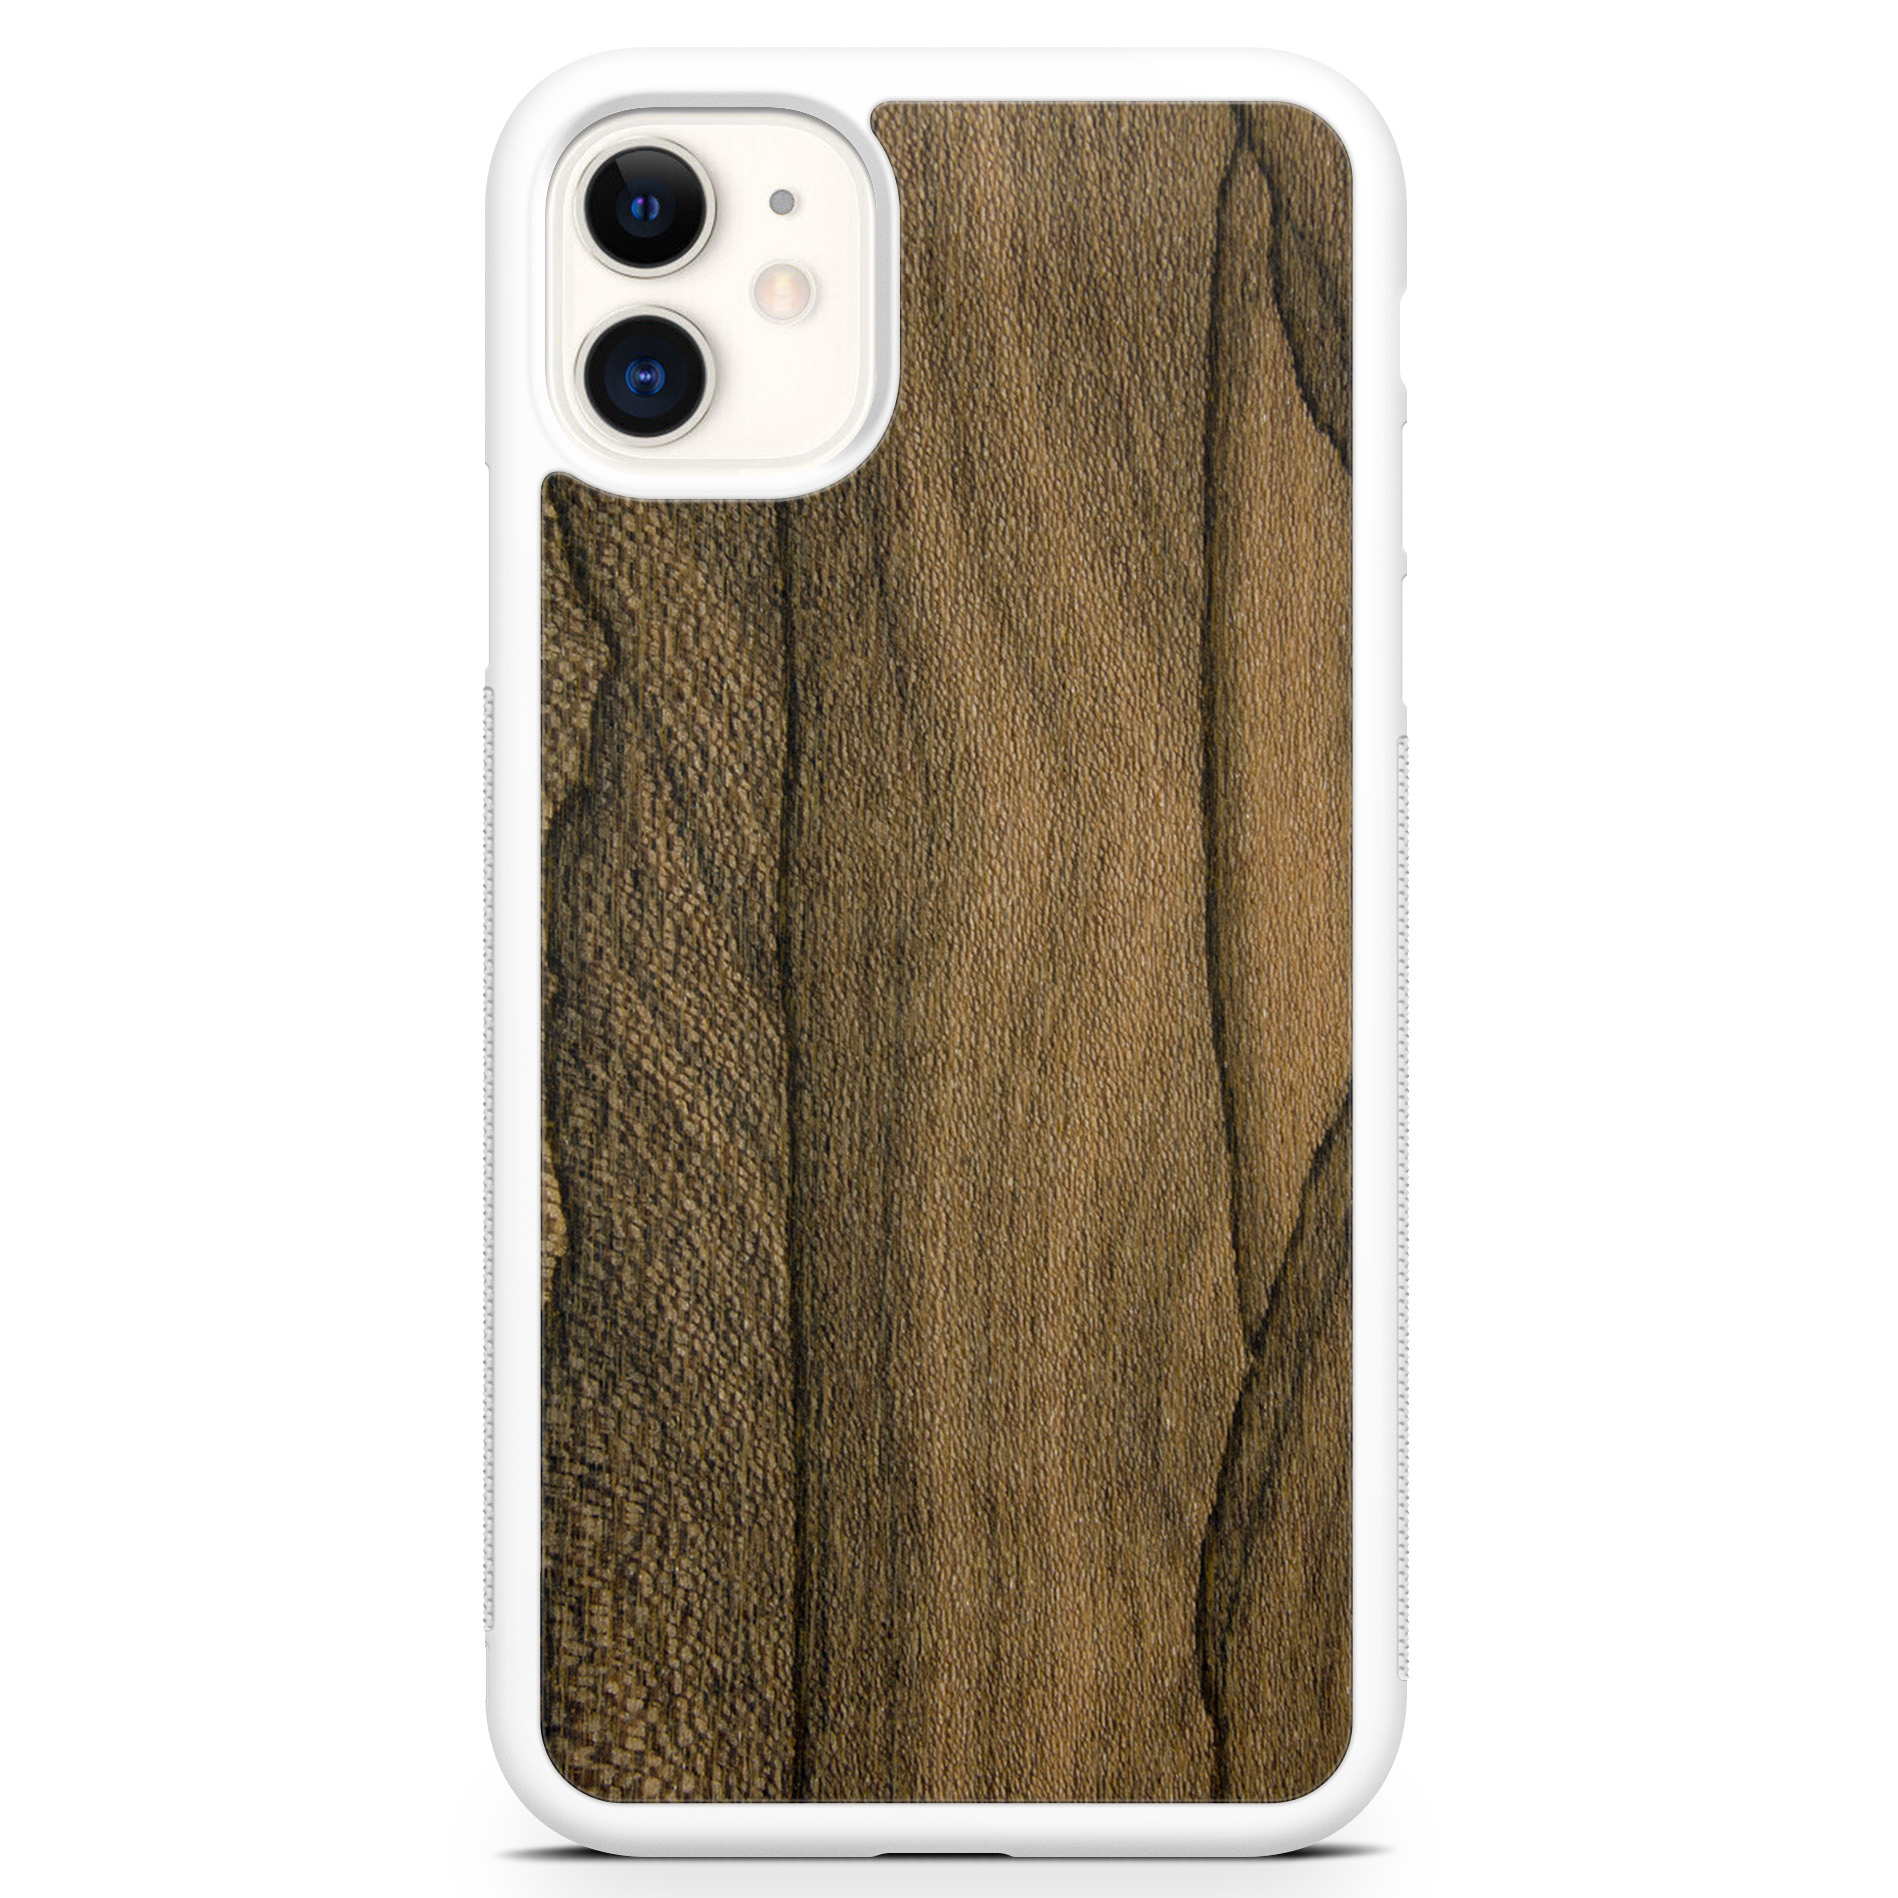 Funda para teléfono blanca de madera de ziricote para iPhone 11